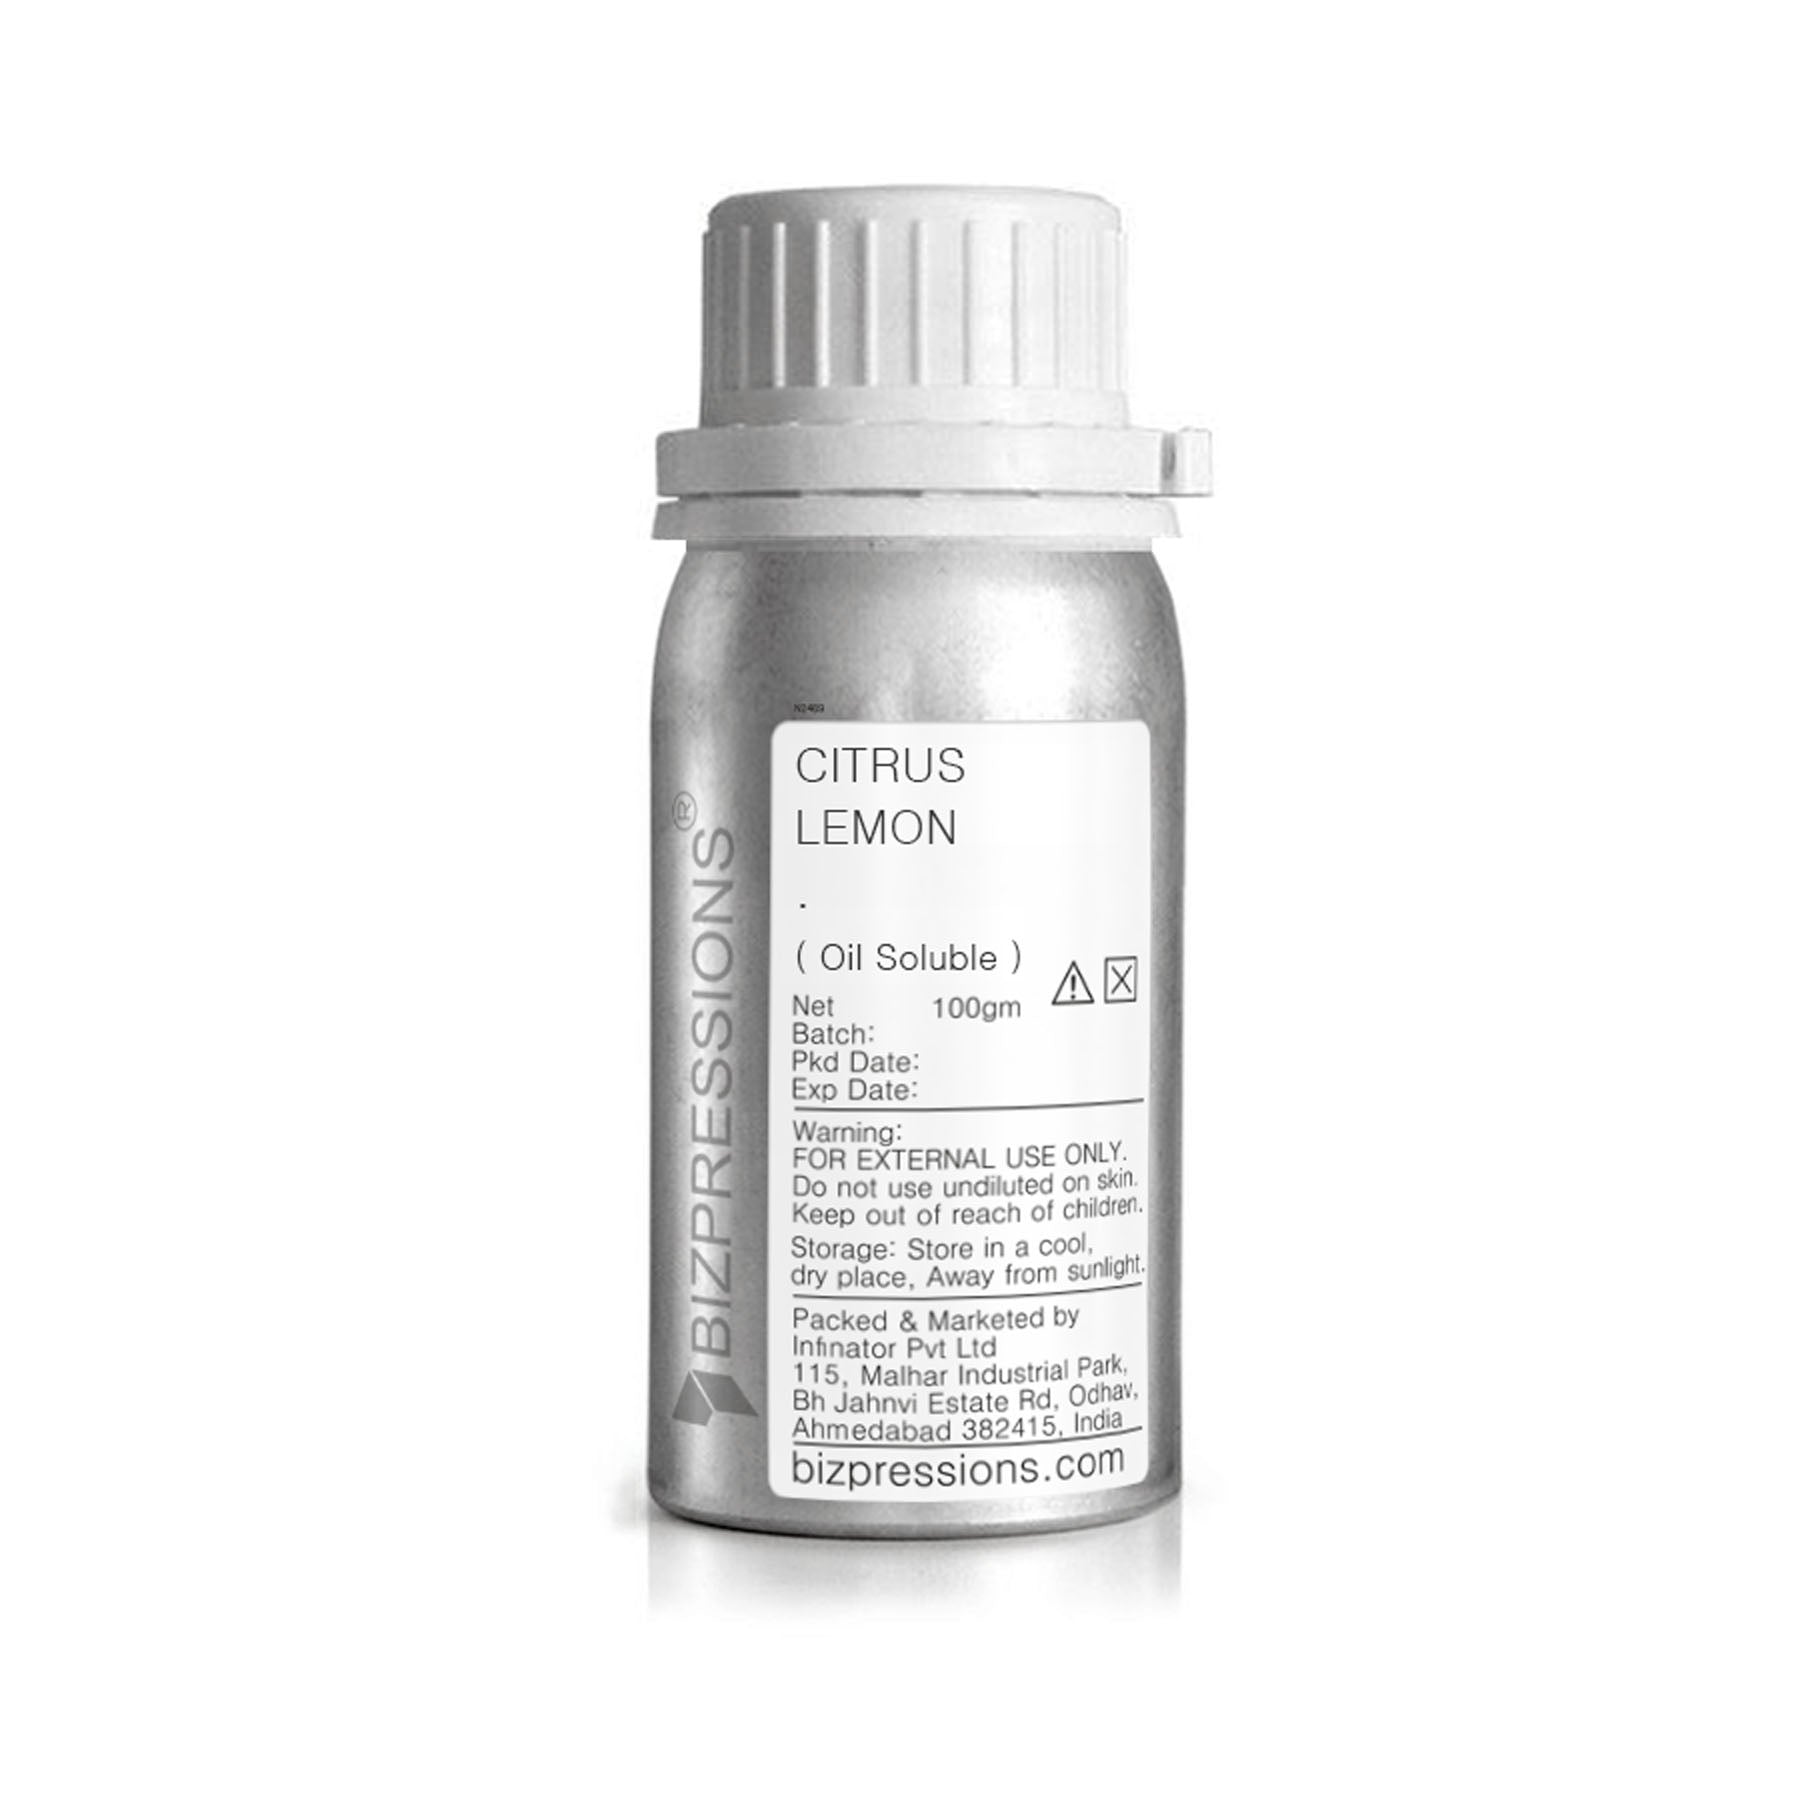 CITRUS LEMON - Fragrance ( Oil Soluble ) - 100 gm